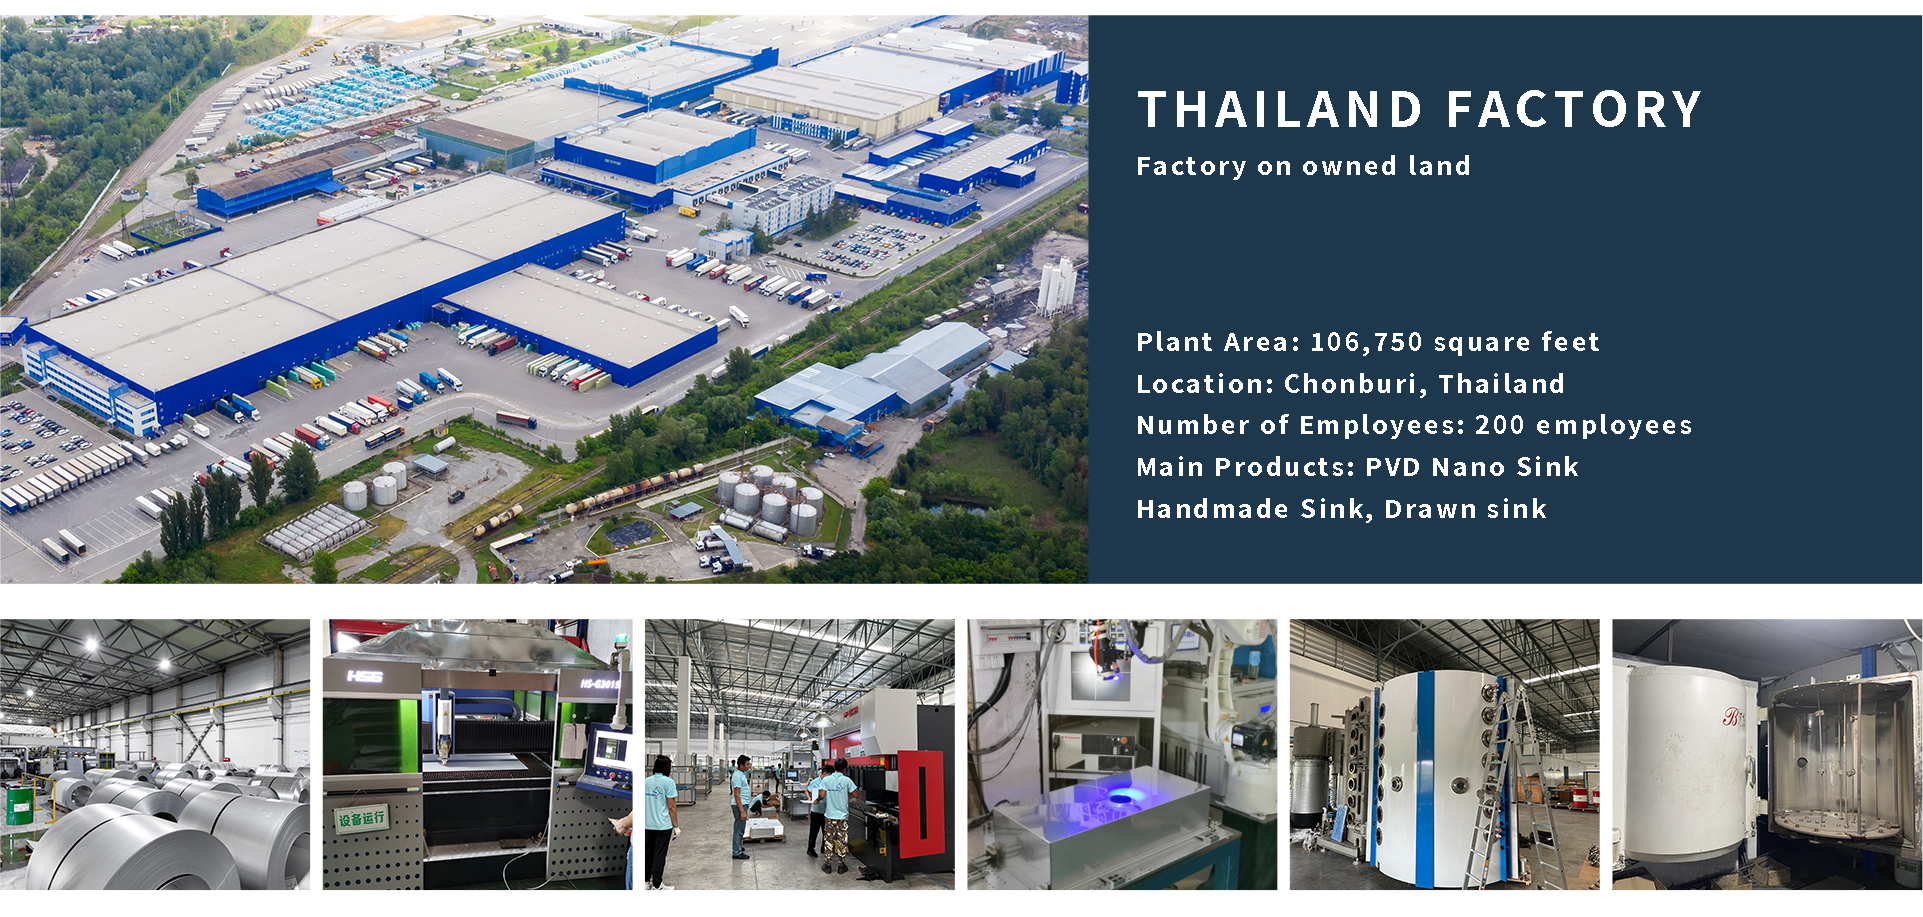 Factories in Thailand